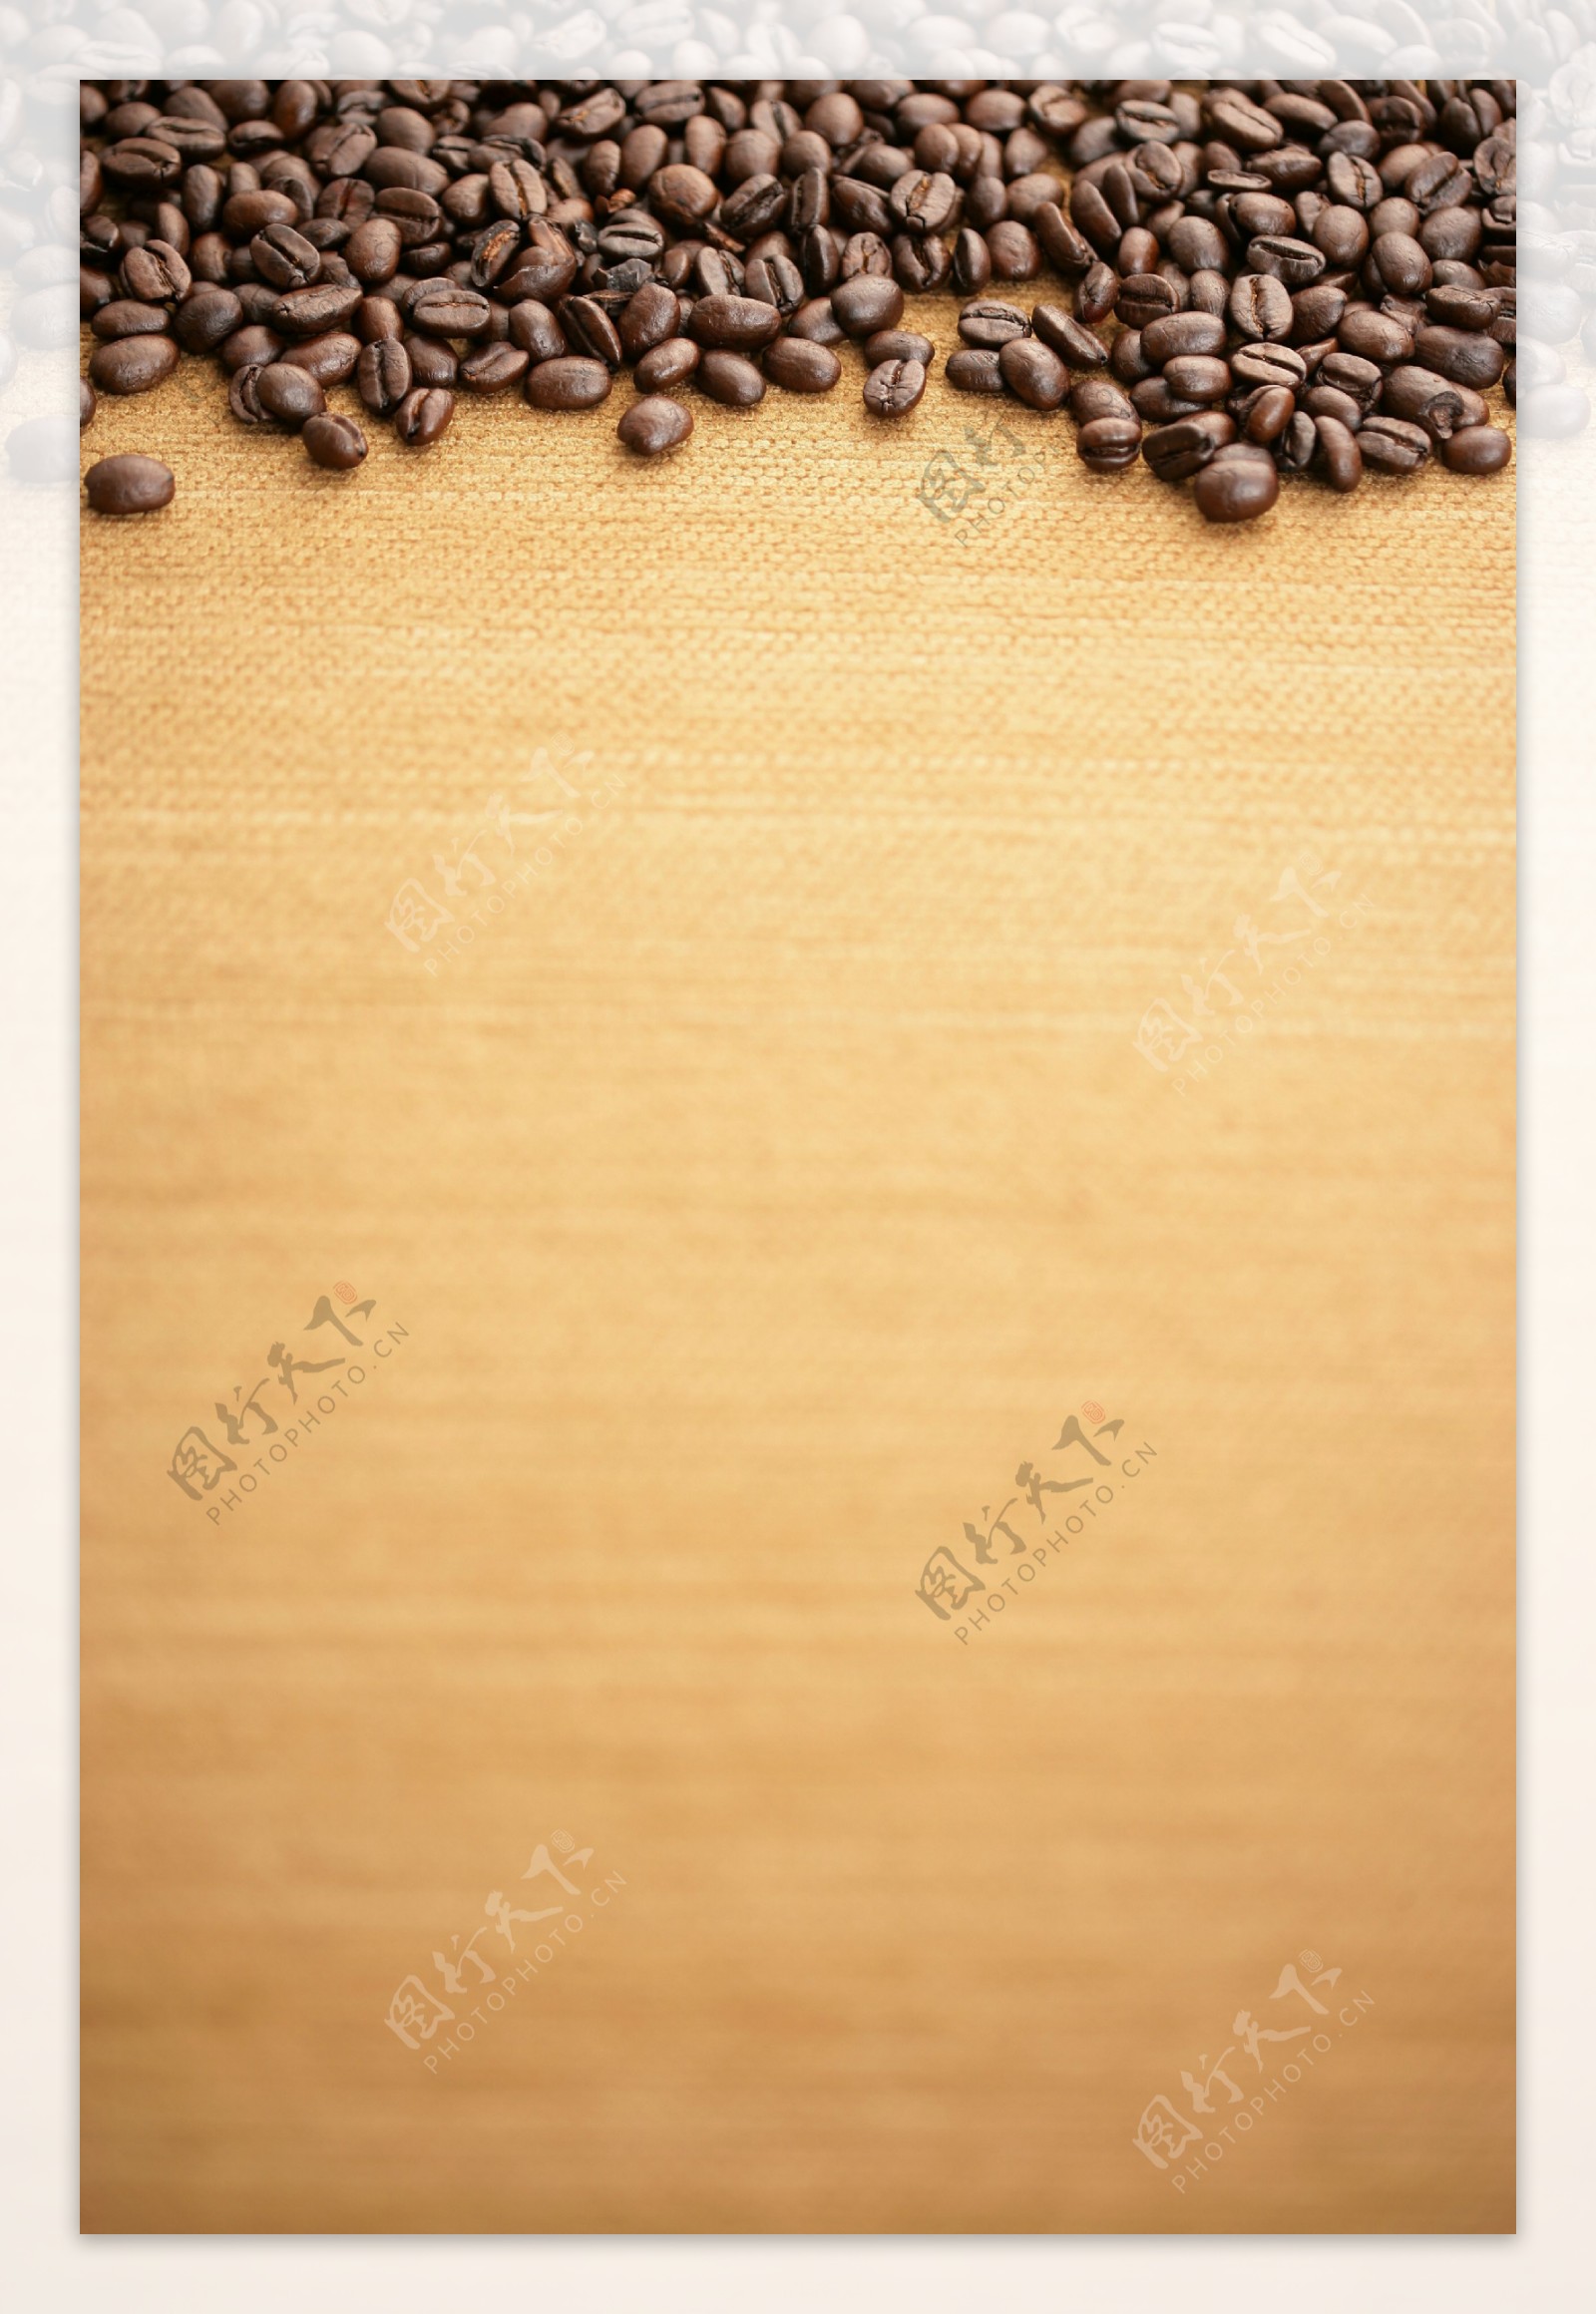 一堆颗粒饱满咖啡豆图片